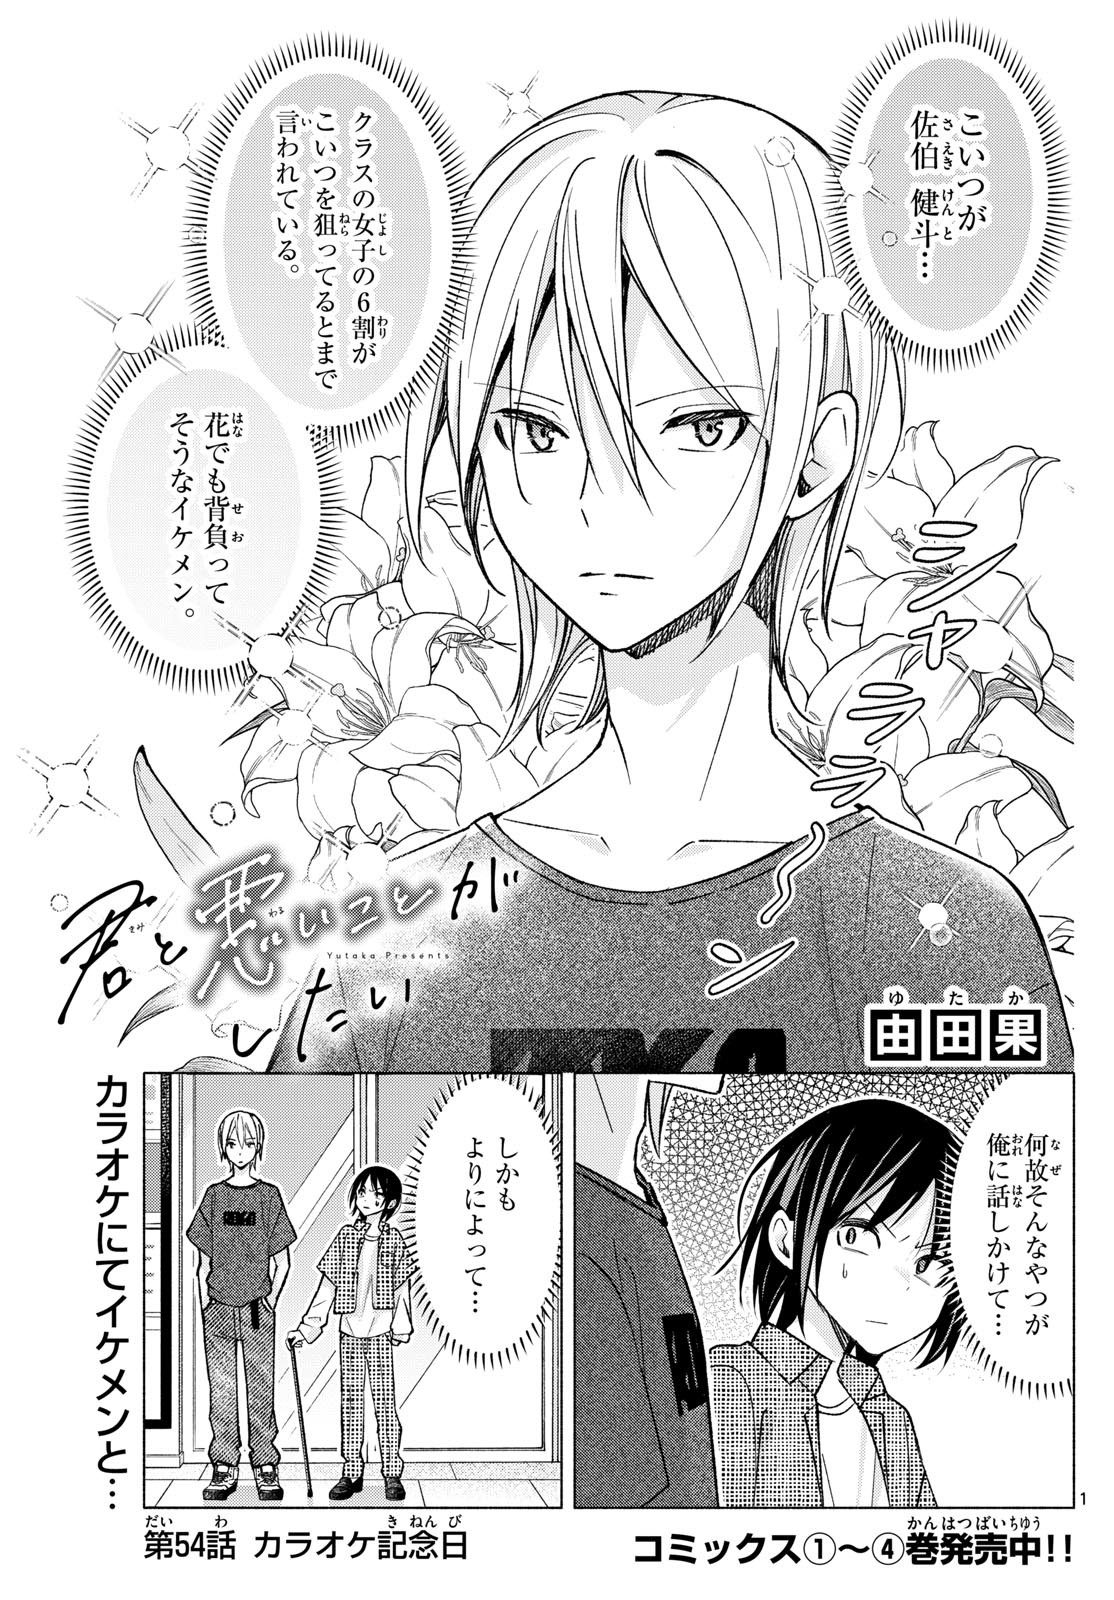 Kimi to Warui Koto ga Shitai - Chapter 054 - Page 1